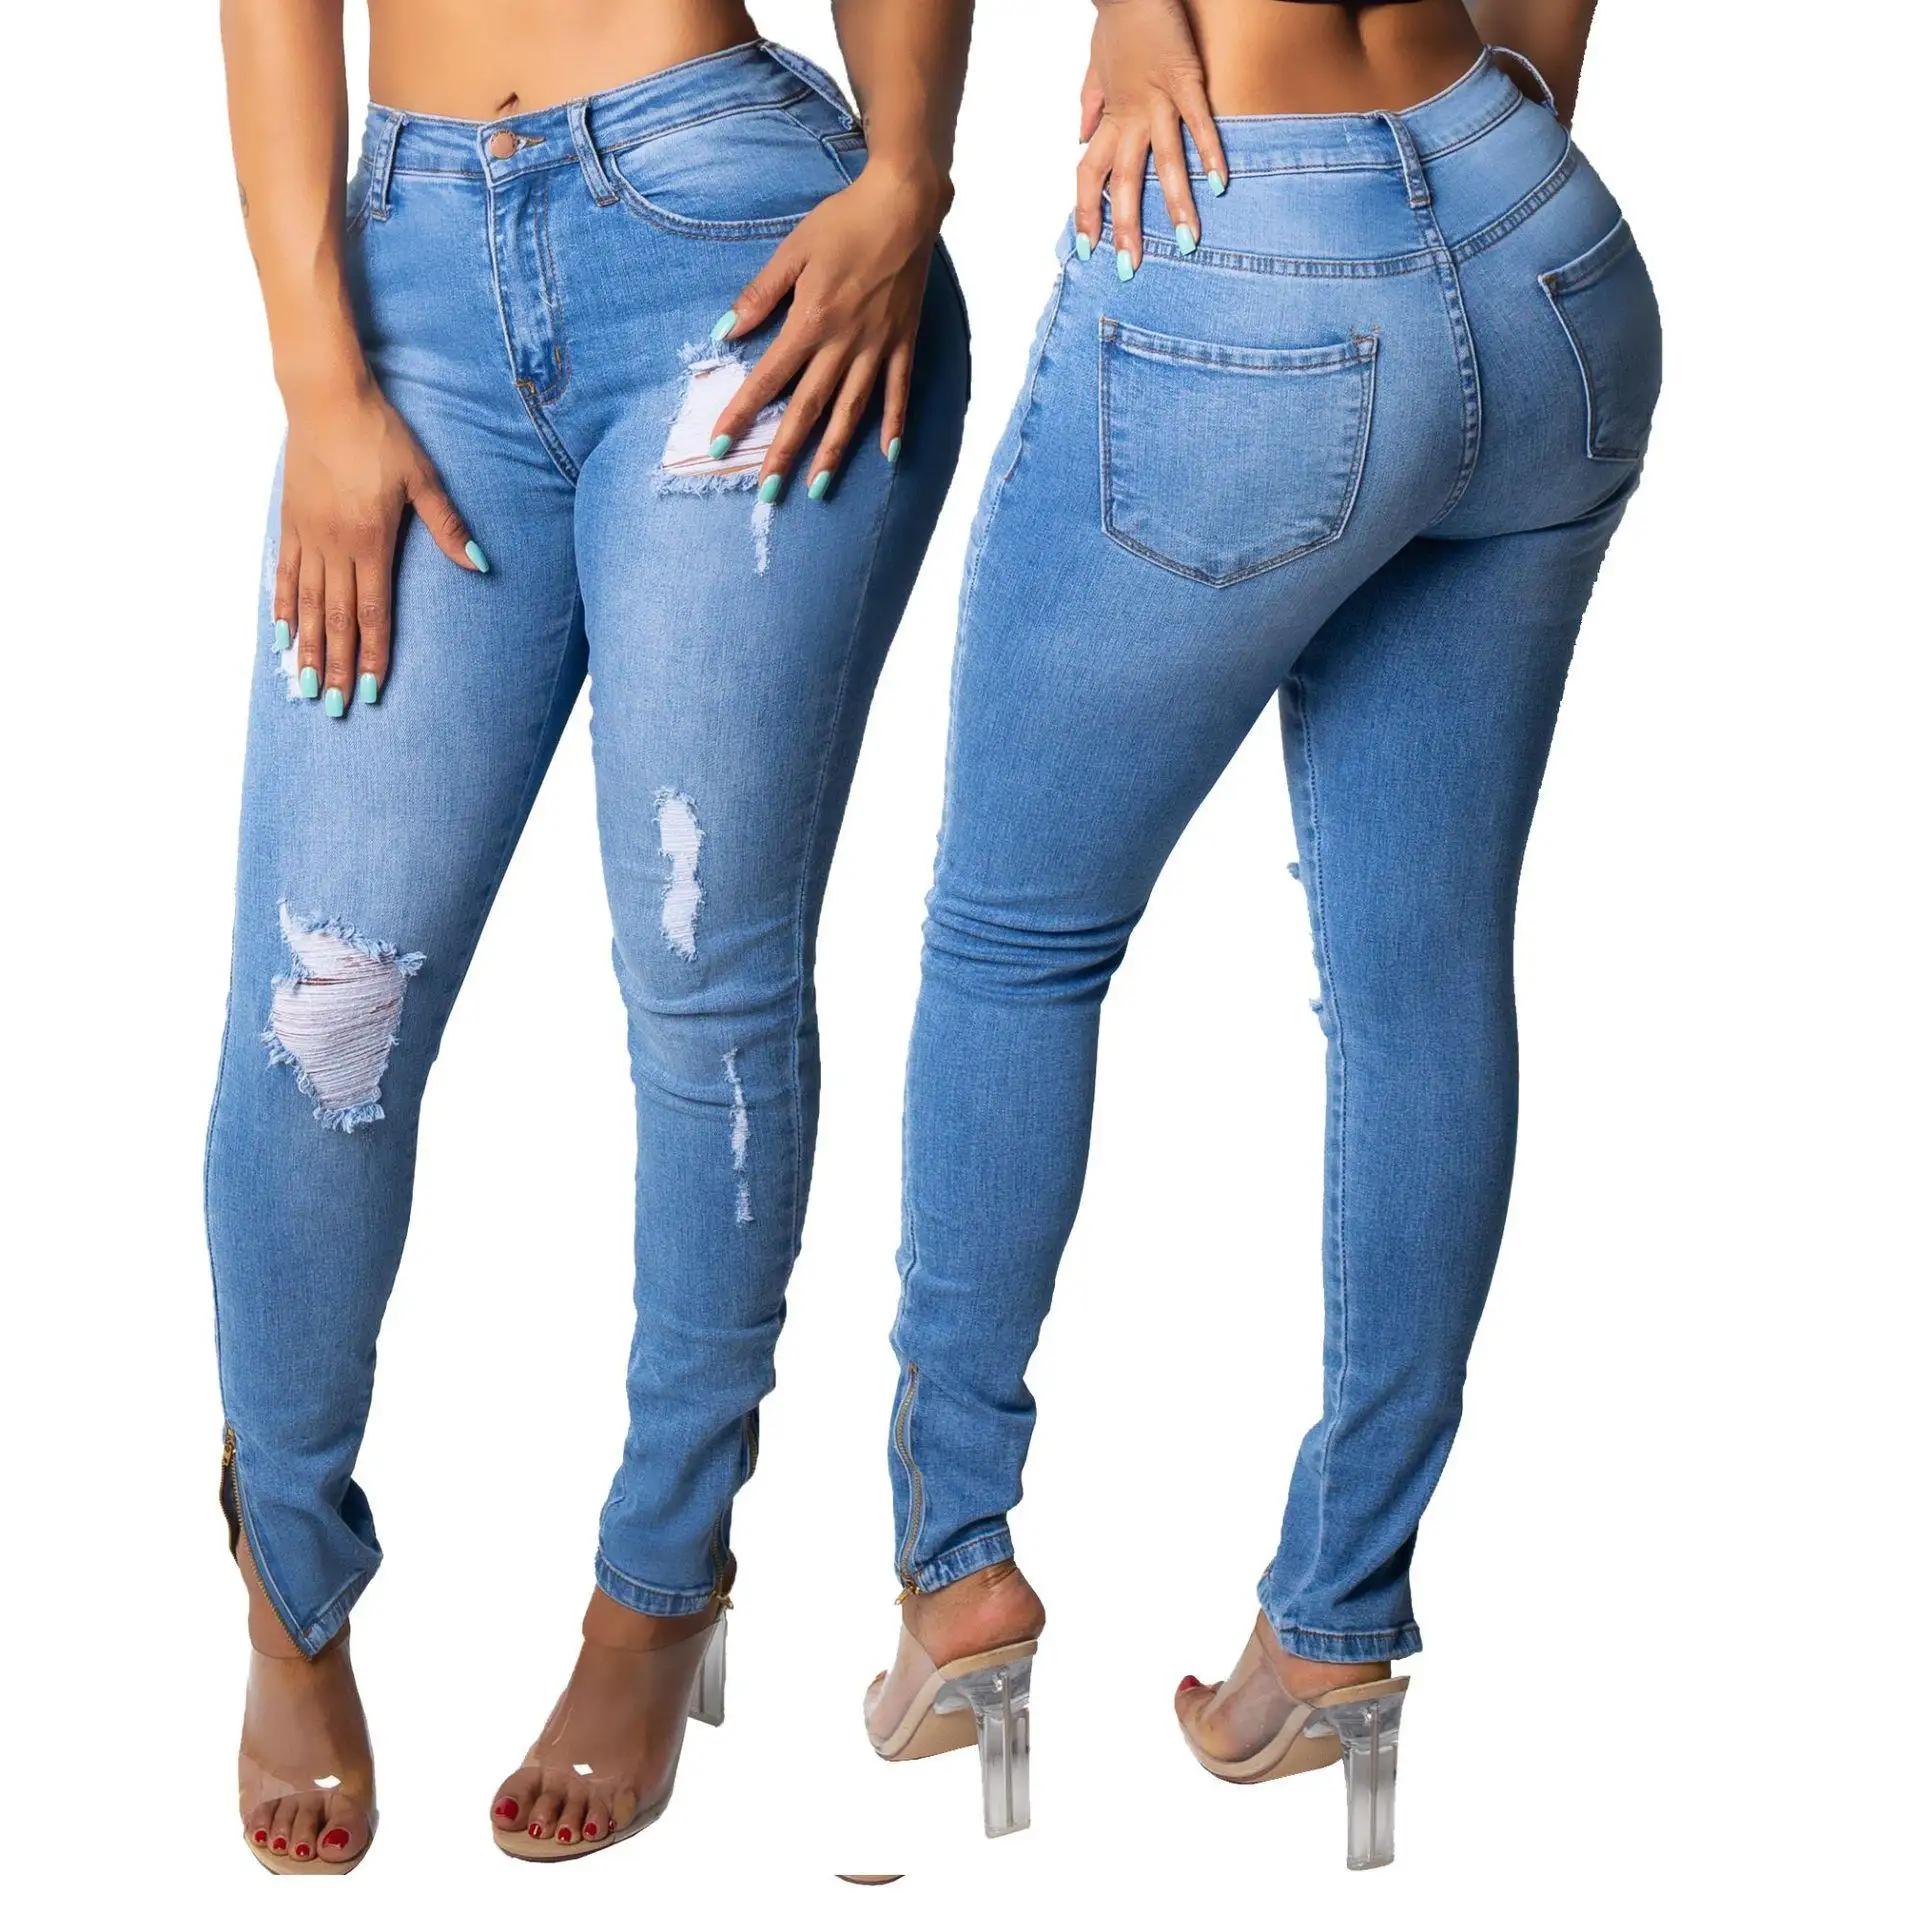 נשים לסרוג ג 'ינס צפצף המניה הרבה/משלוח לבטל המוצרים במחיר זול